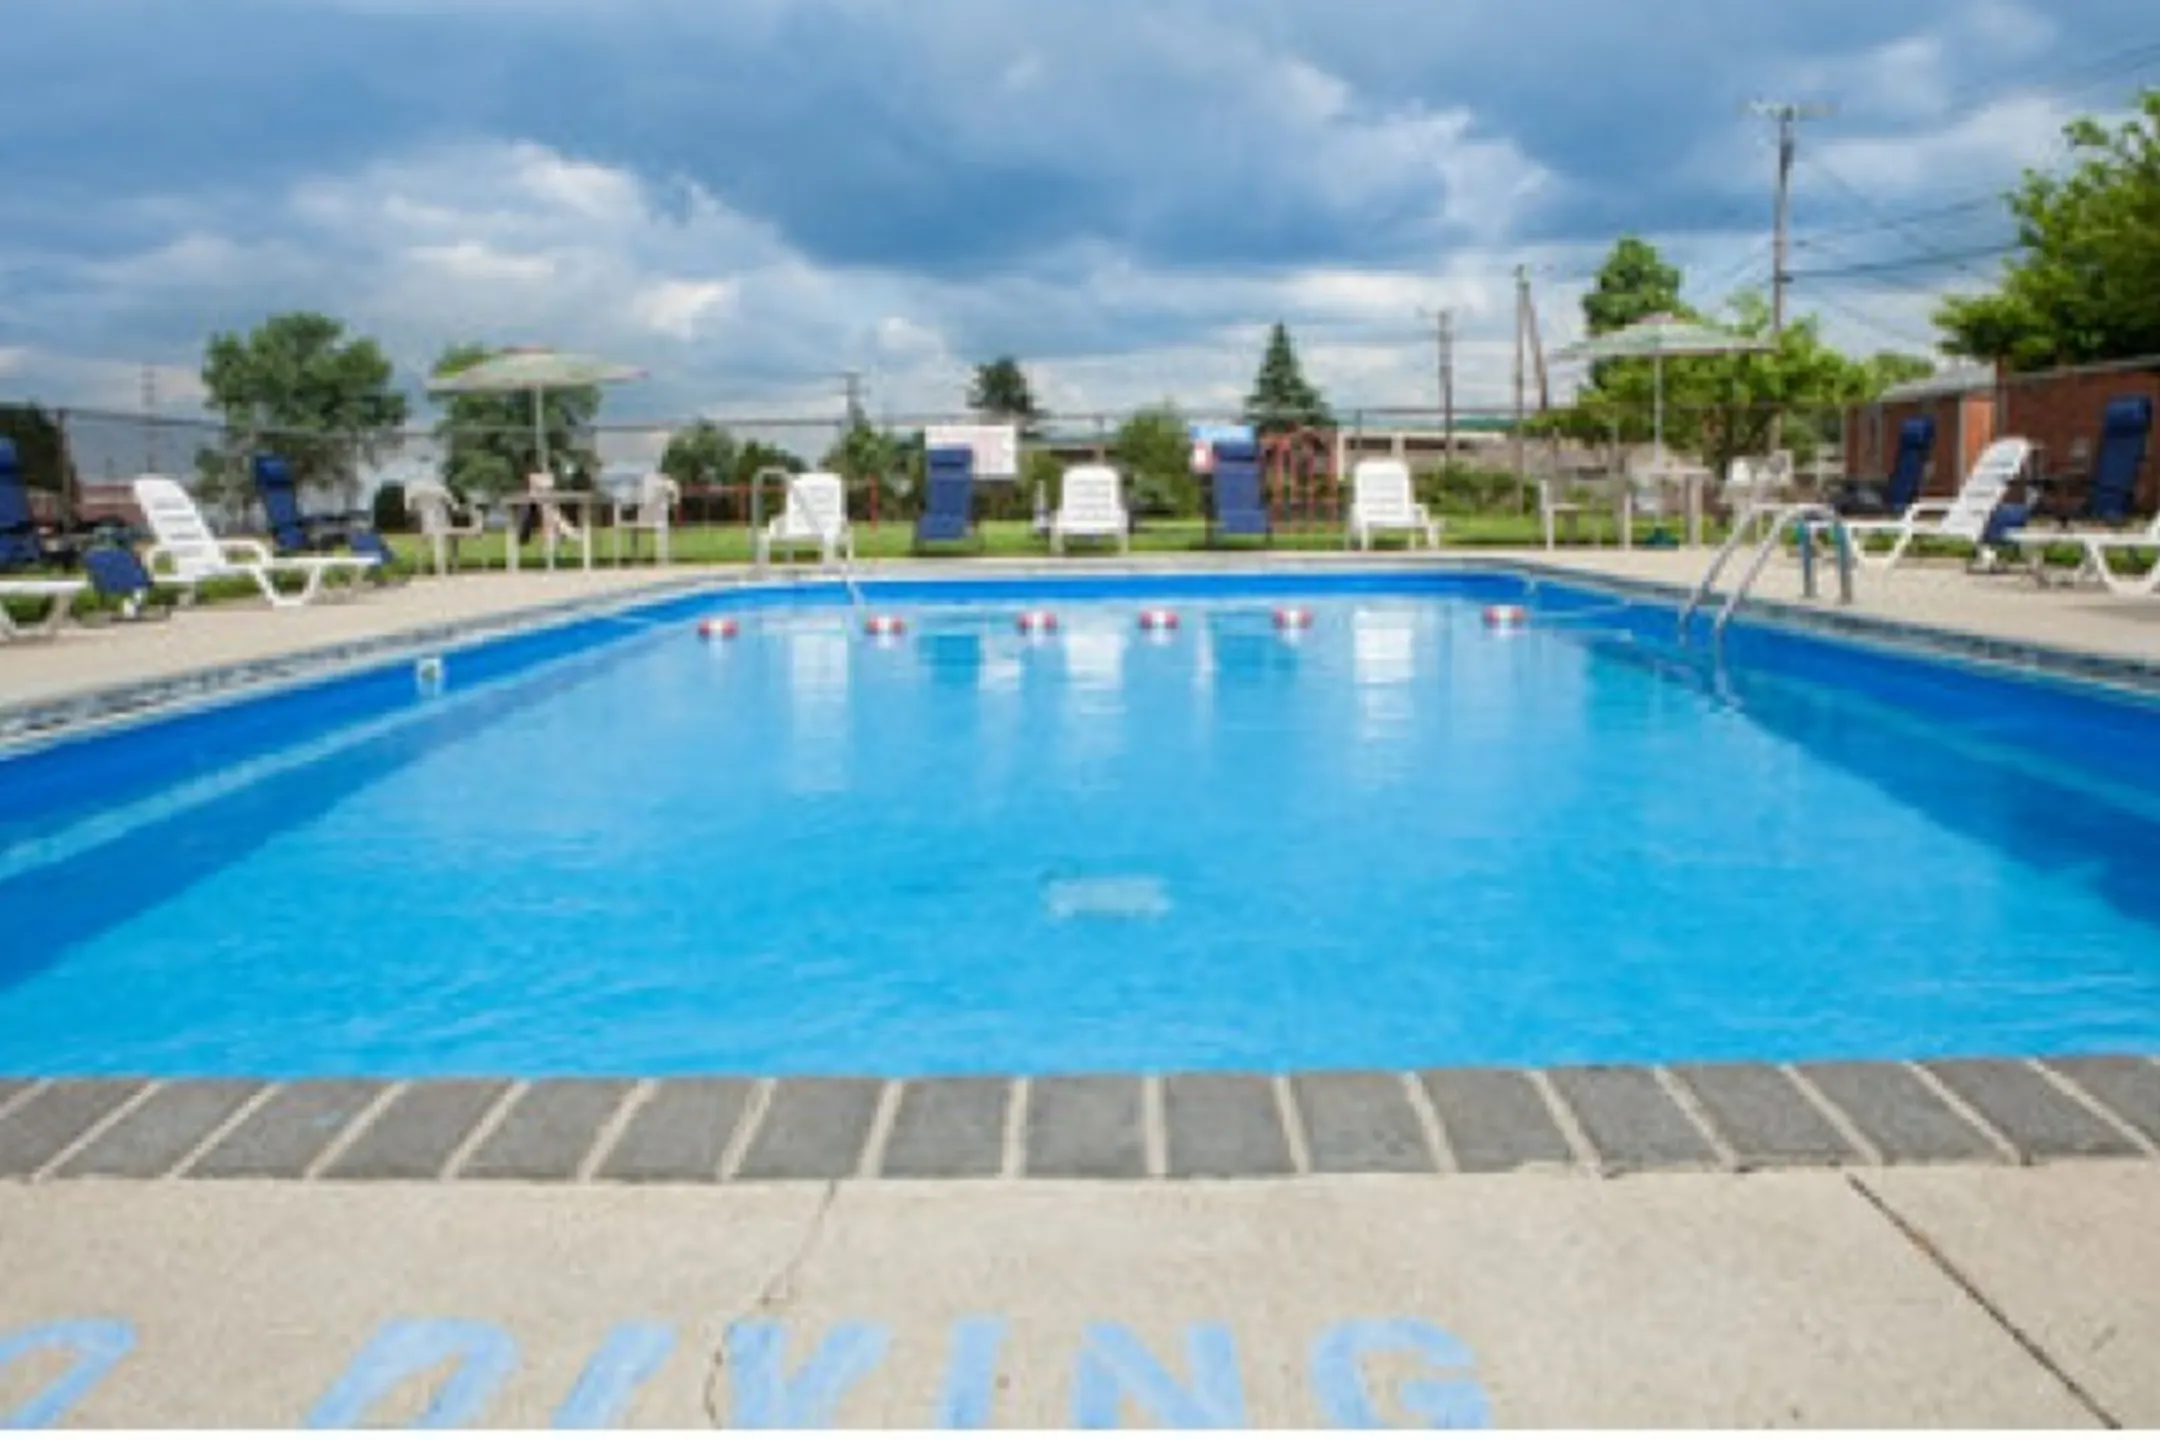 Pool - Heathwood Village - Heath, OH